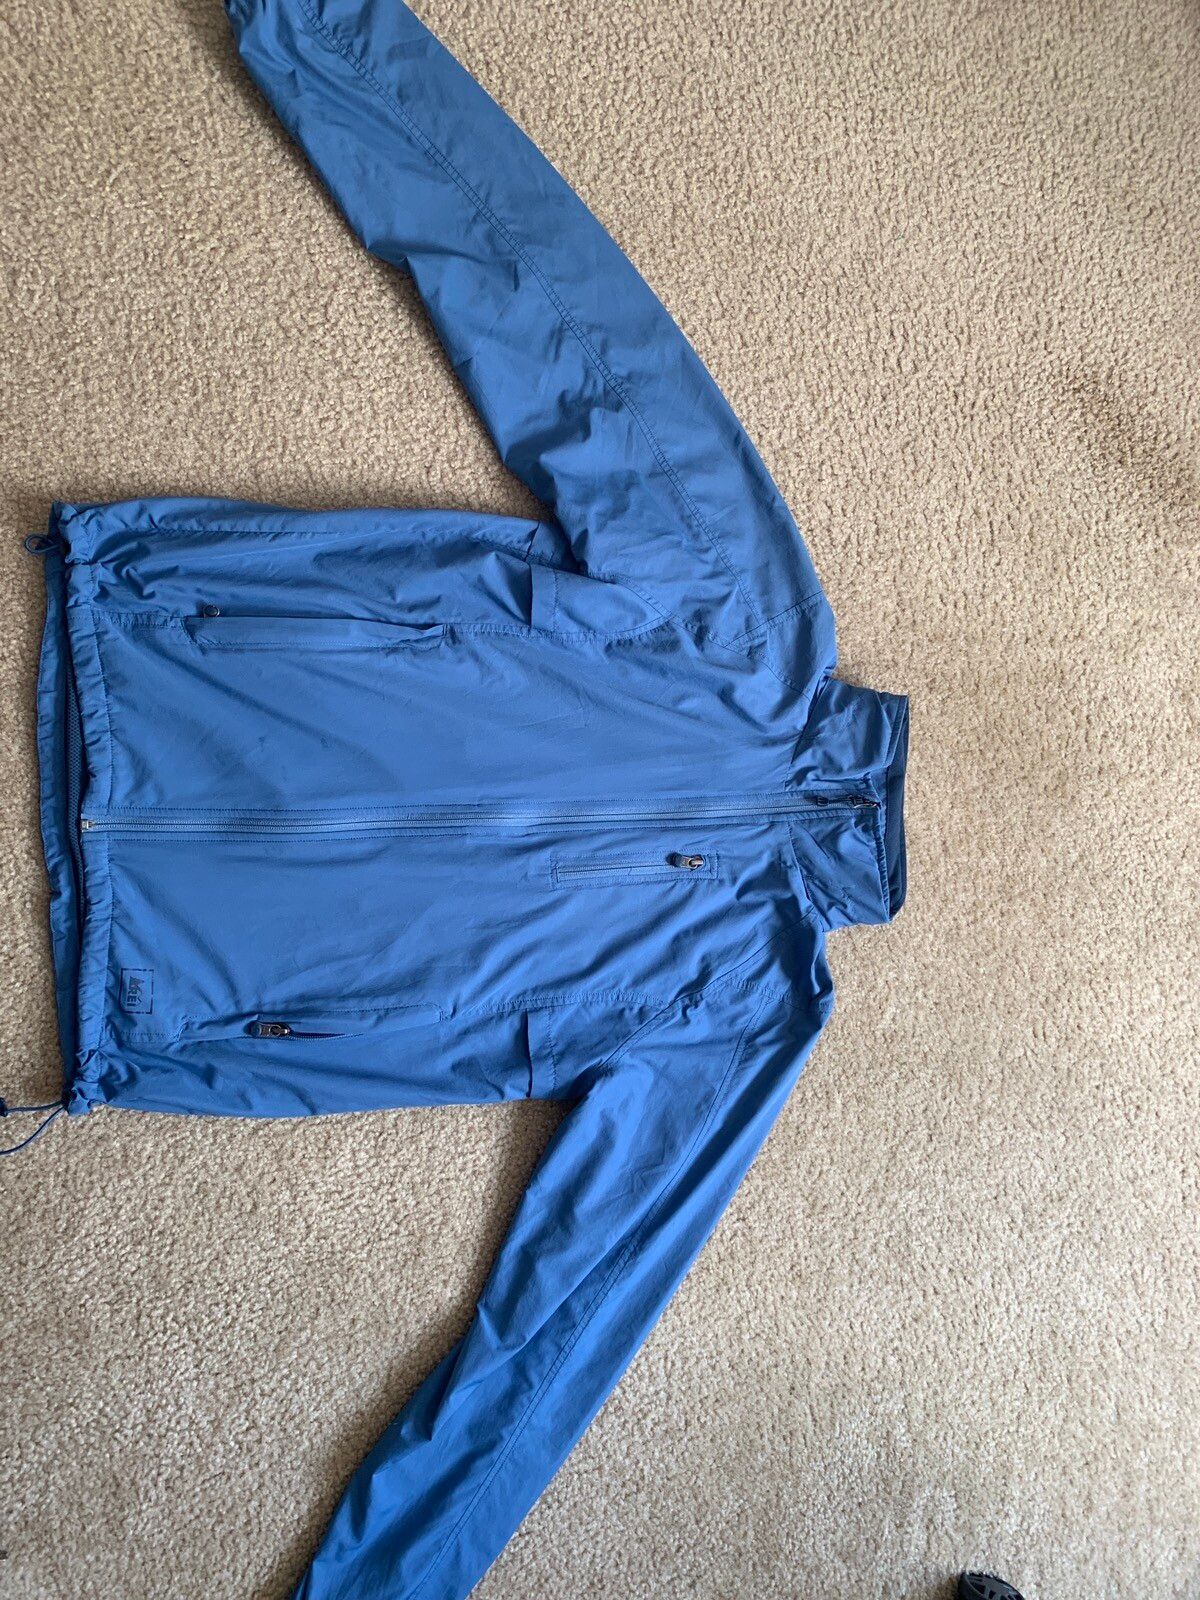 Rei Rei Raincoat Jacket (Blue) Size US S / EU 44-46 / 1 - 2 Preview